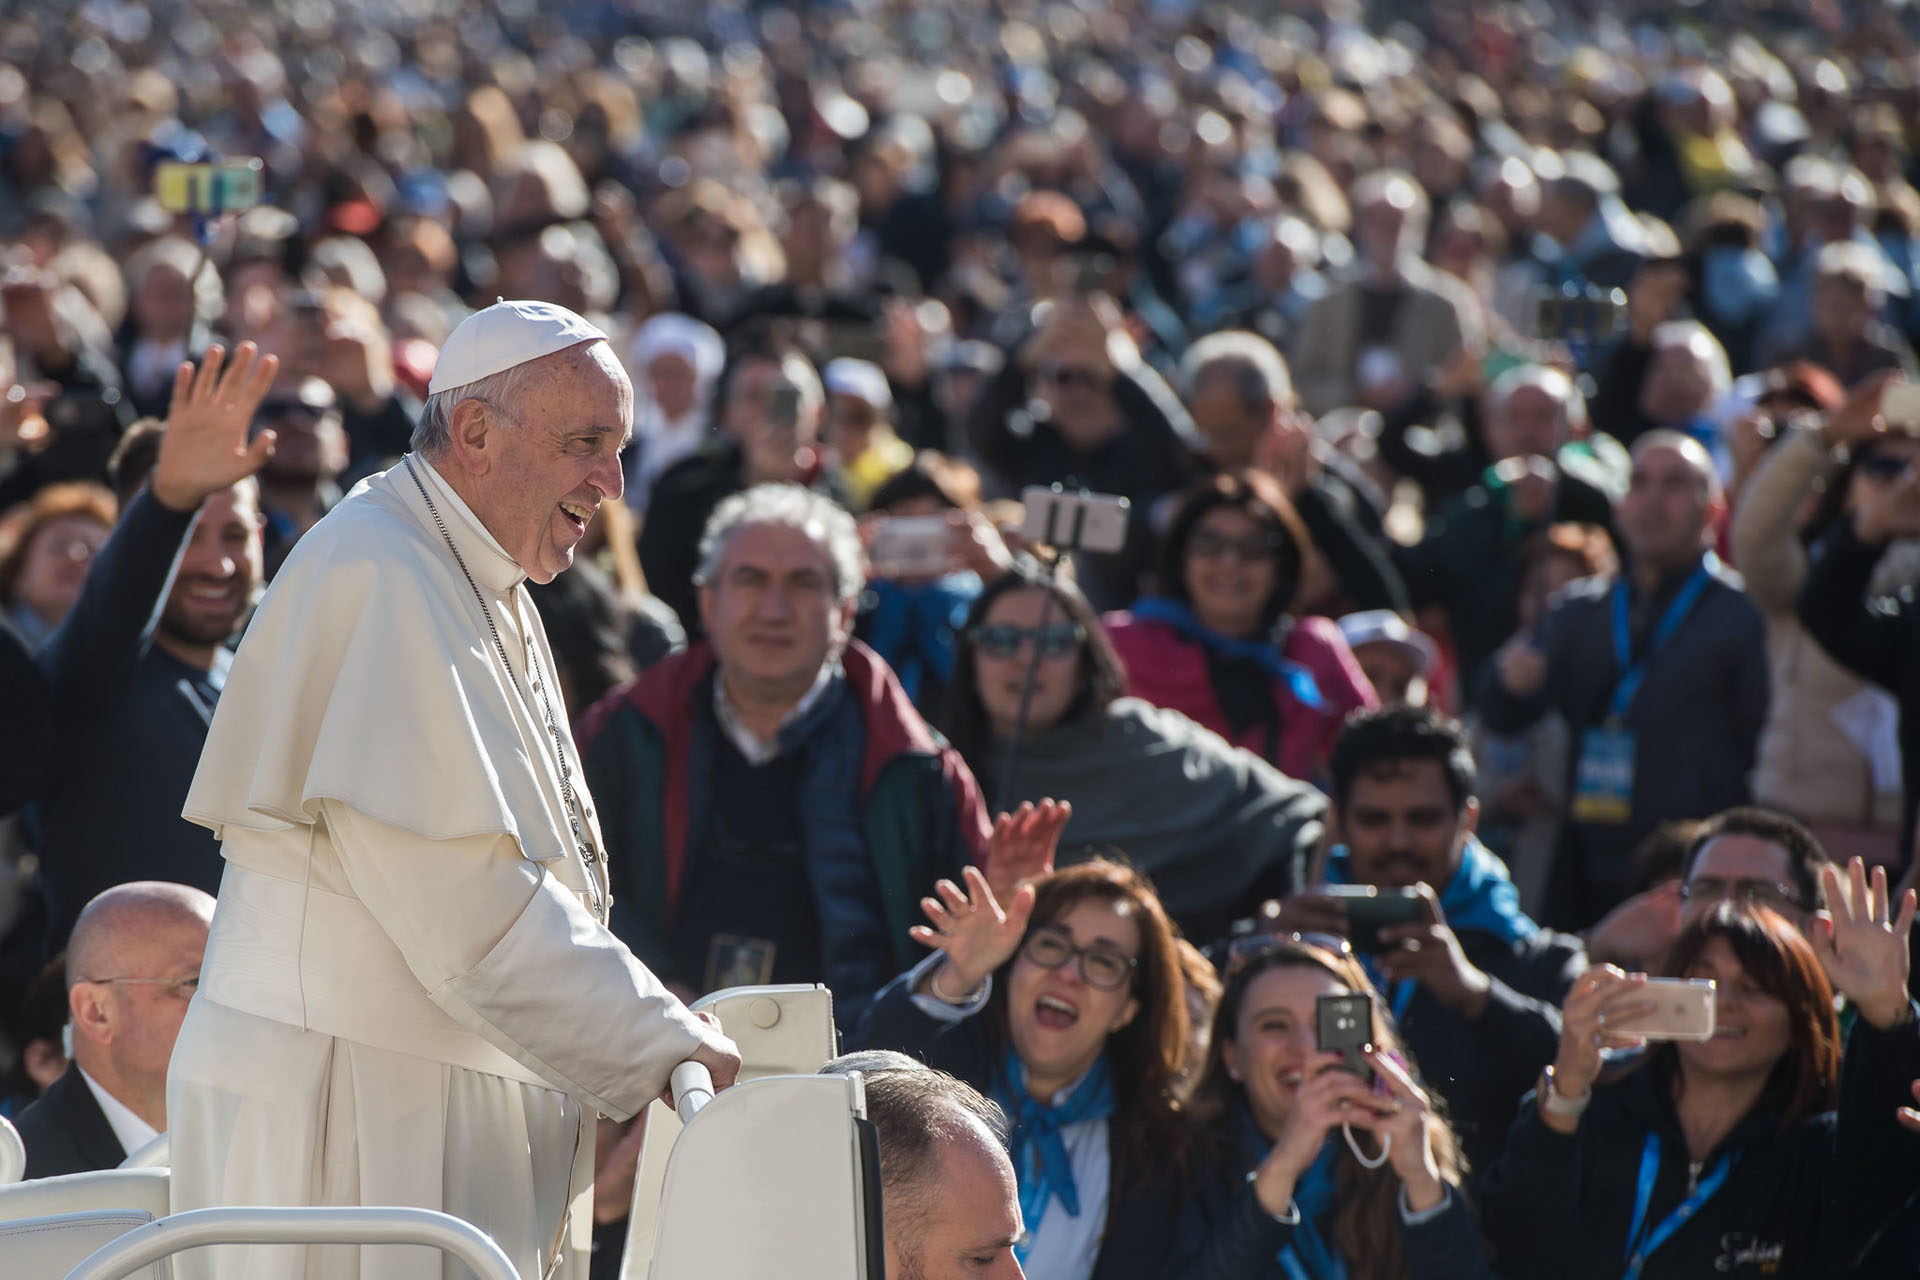 Avant l'audience, le pape salue la foule en papamobile |  Flickr/Mazur/catholicnews.org.uk/CC BY-NC-SA 2.0